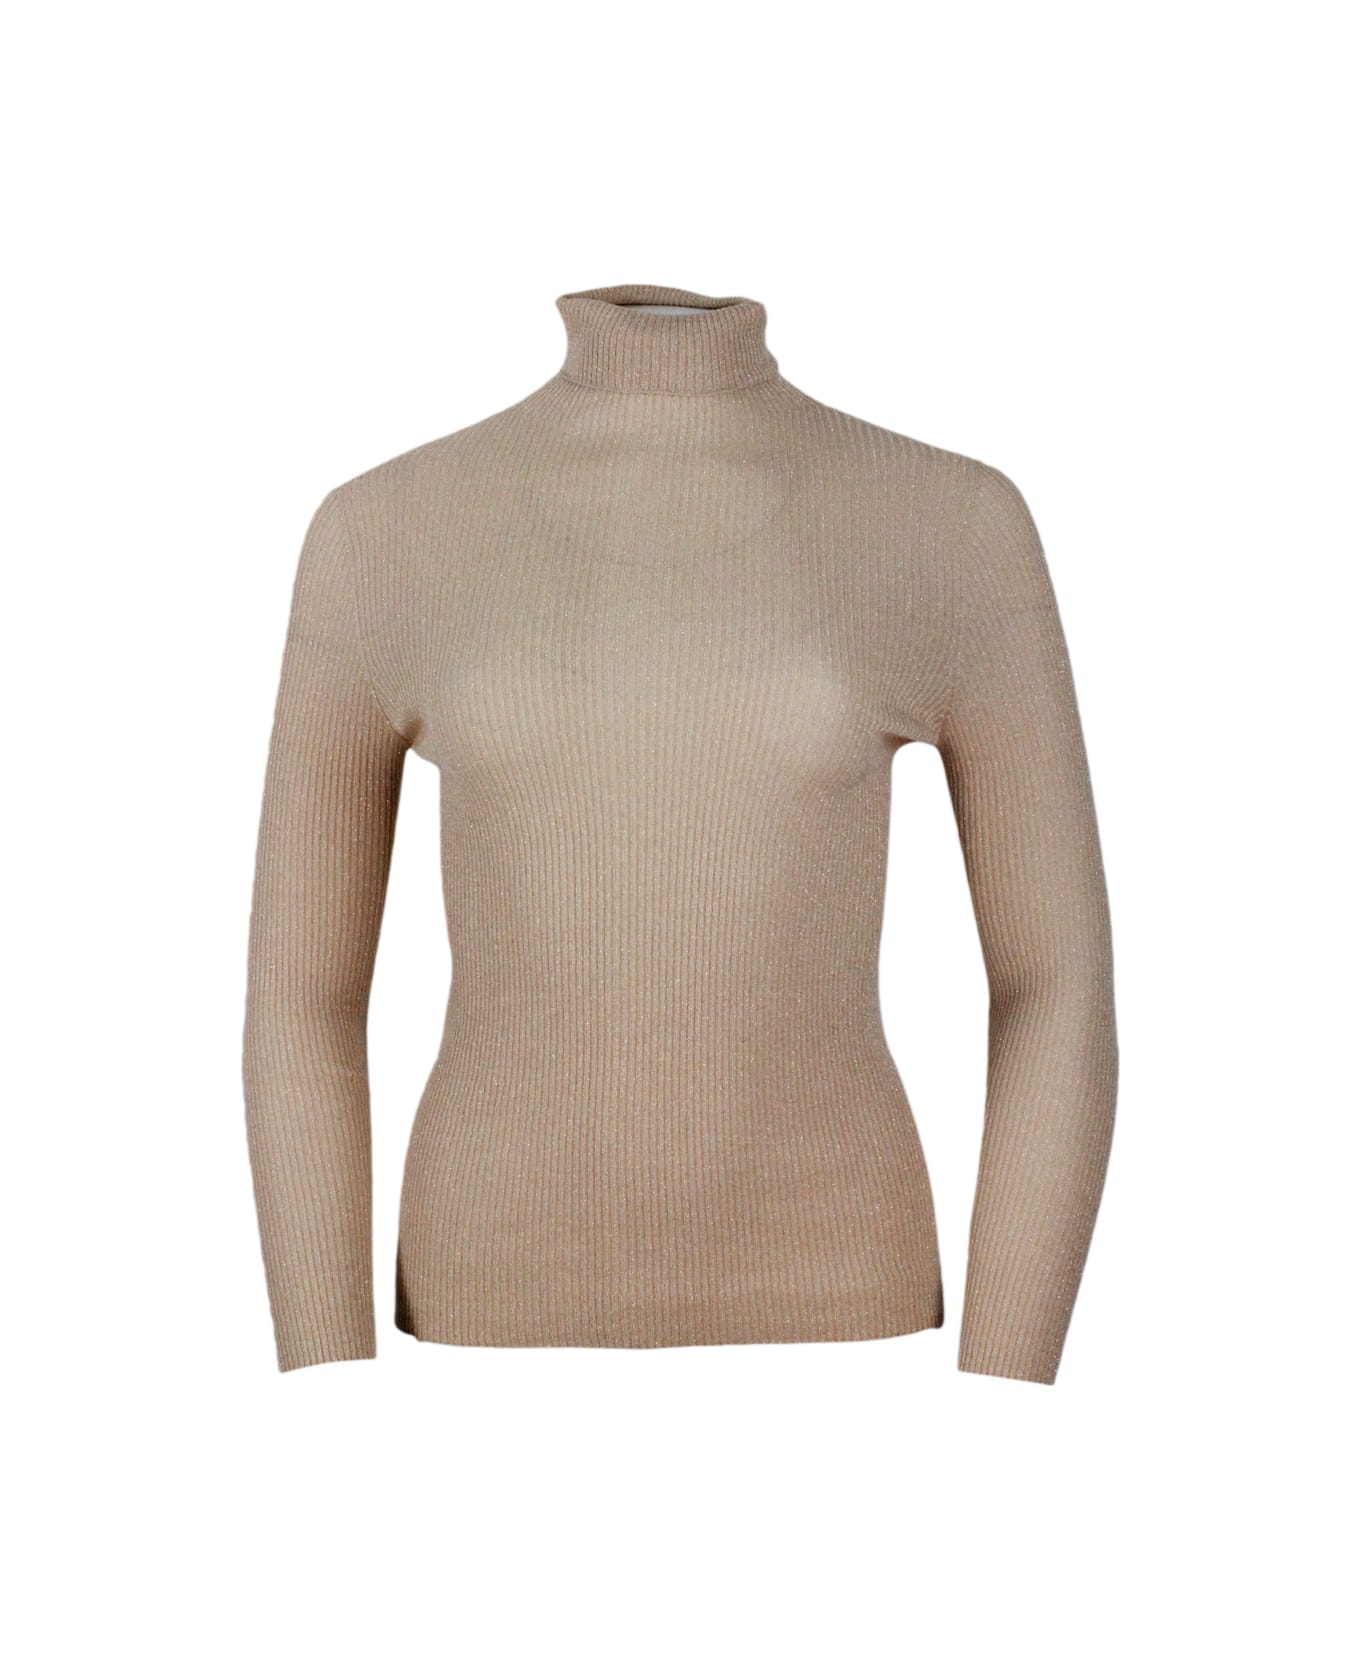 Fabiana Filippi Long-sleeved Turtleneck Sweater In Merino Lamè Embellished With Shiny Lurex That Gives Brightness - Camel Gold